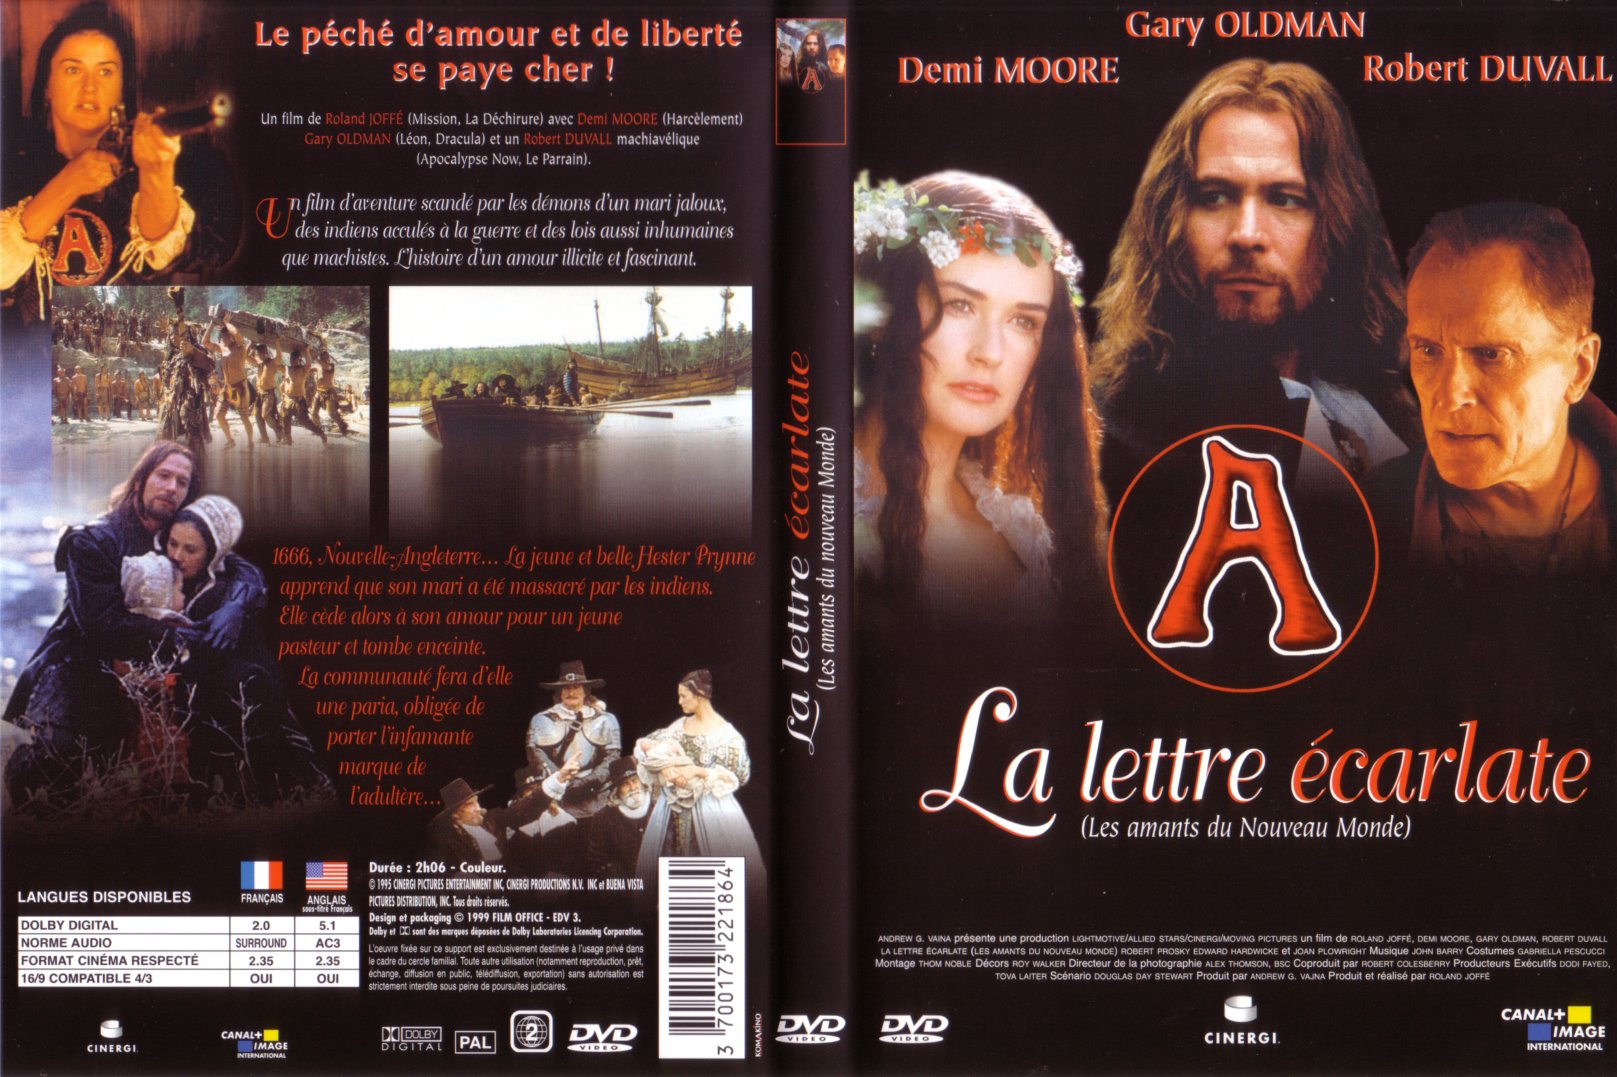 Jaquette DVD La lettre carlate